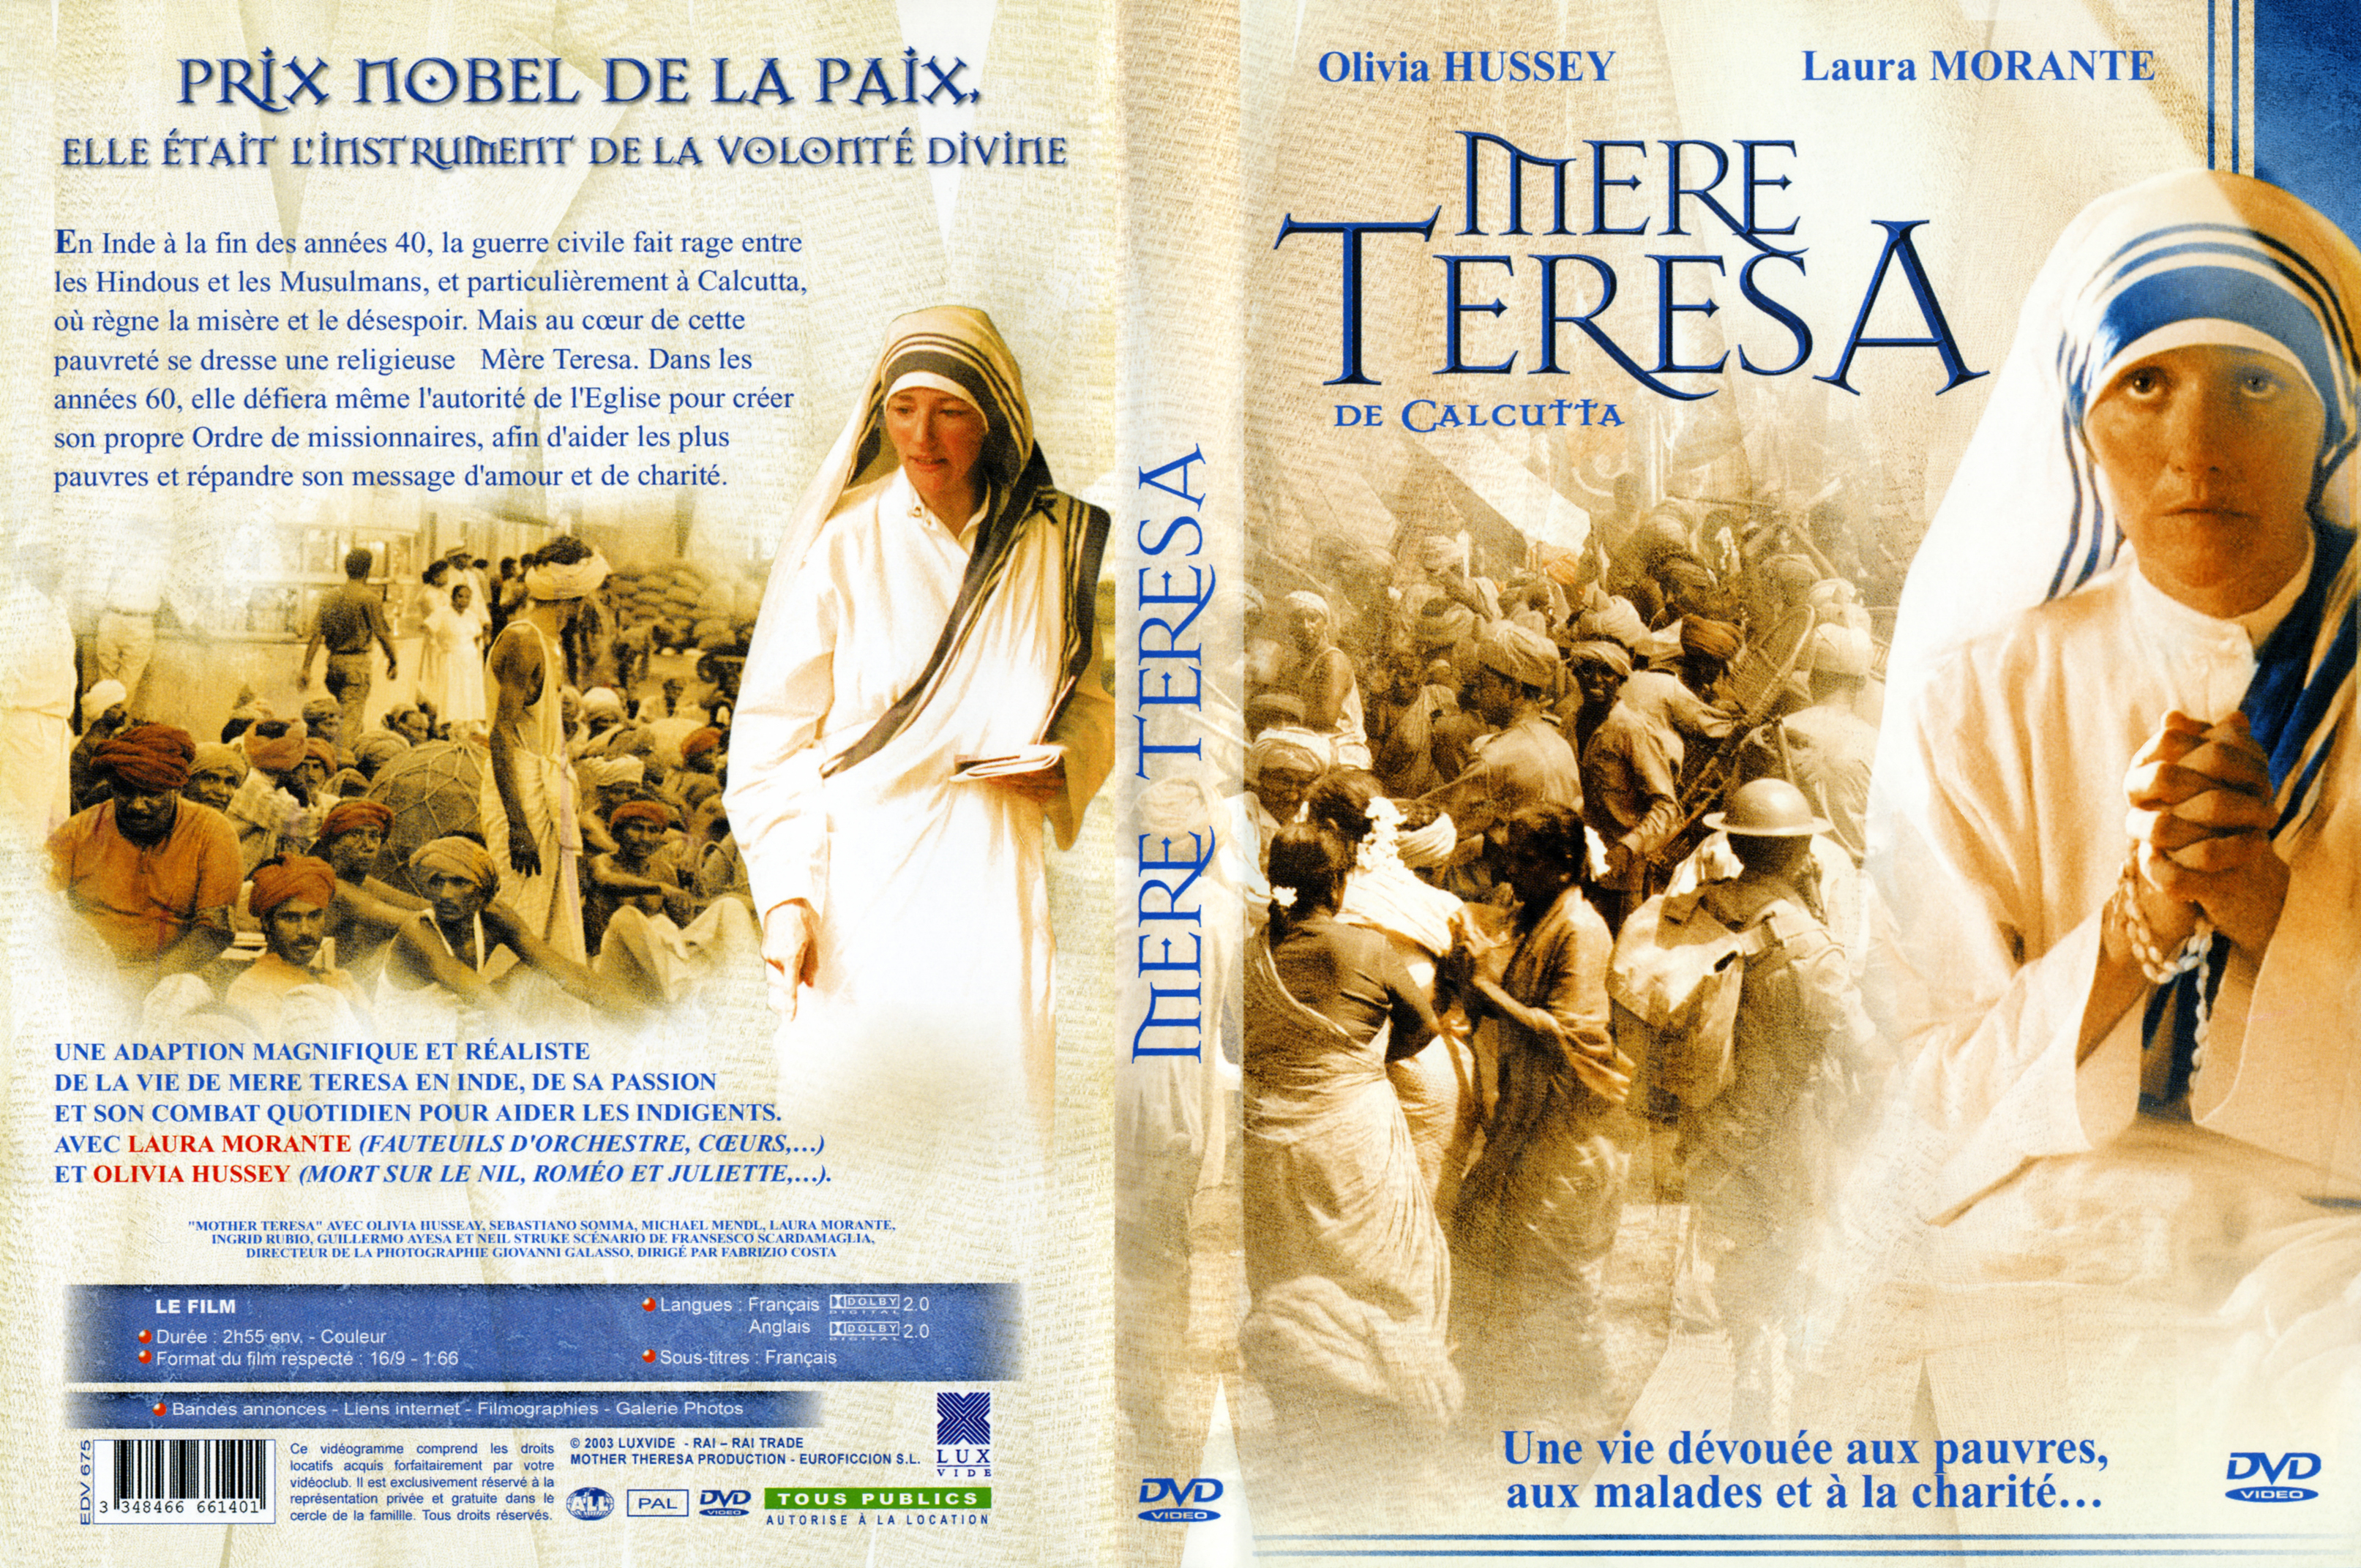 Les lettres de Mère Teresa (DVD)